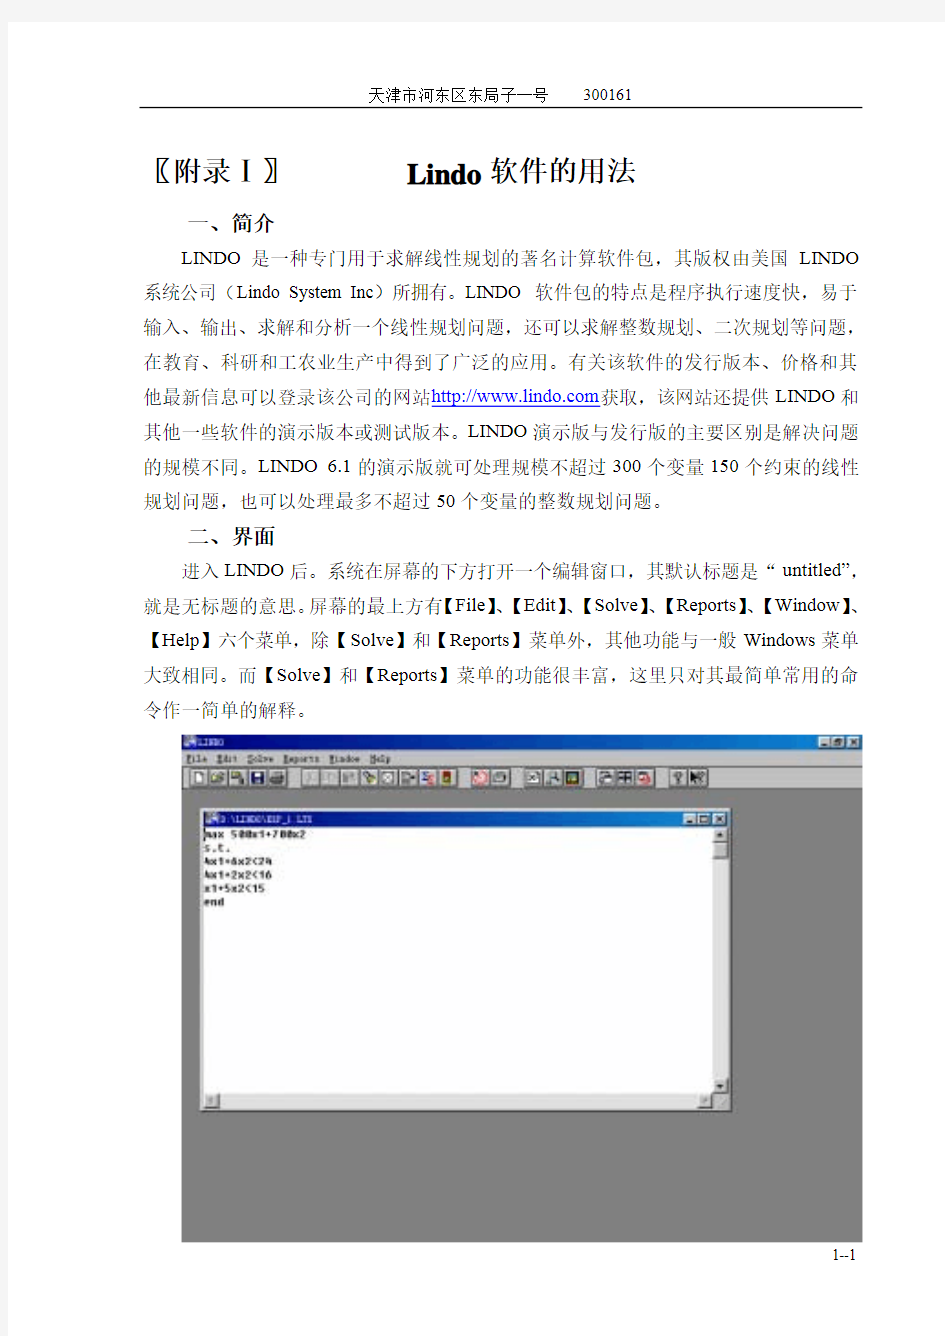 lindo 6.1 较详细的软件使用说明,有例子